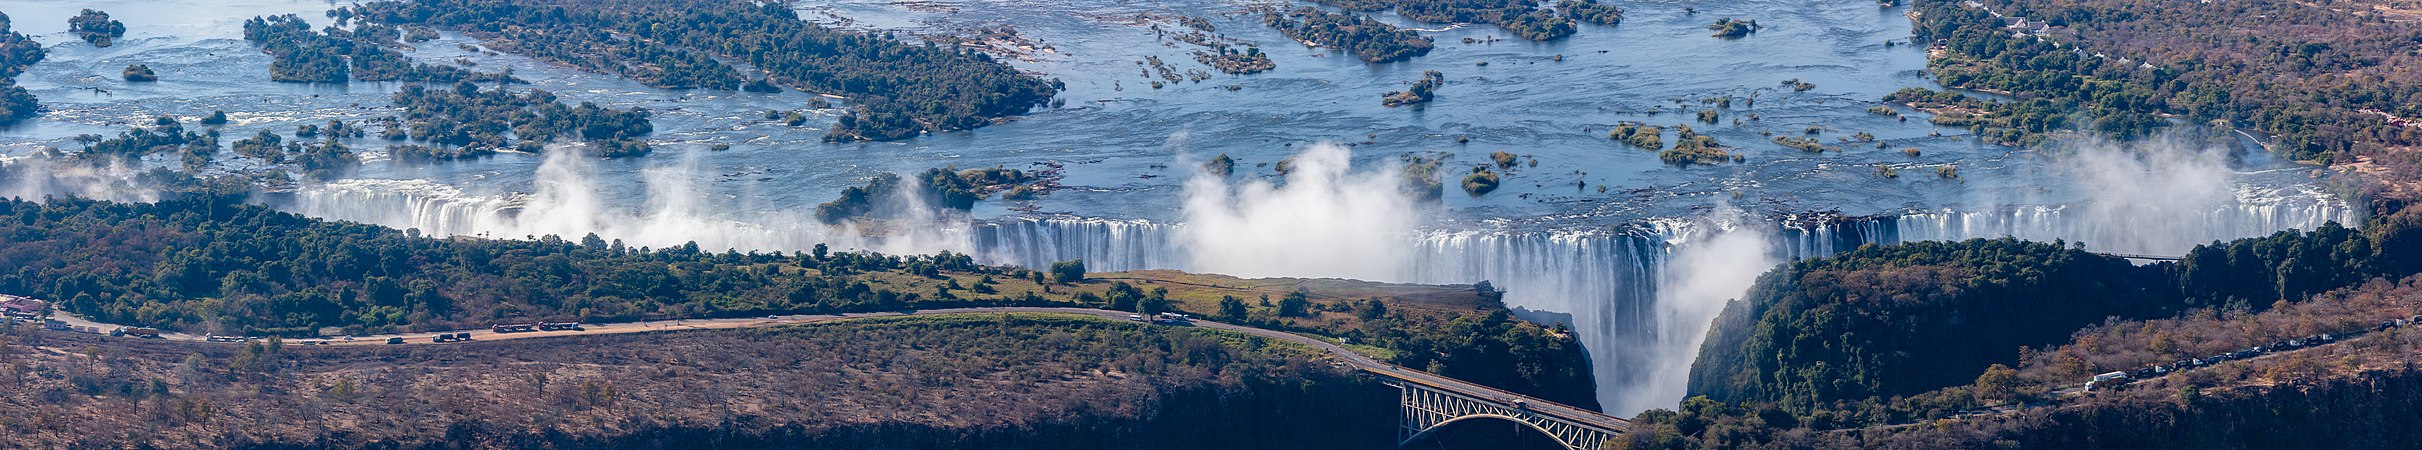 赞比西河维多利亚瀑布全景照。